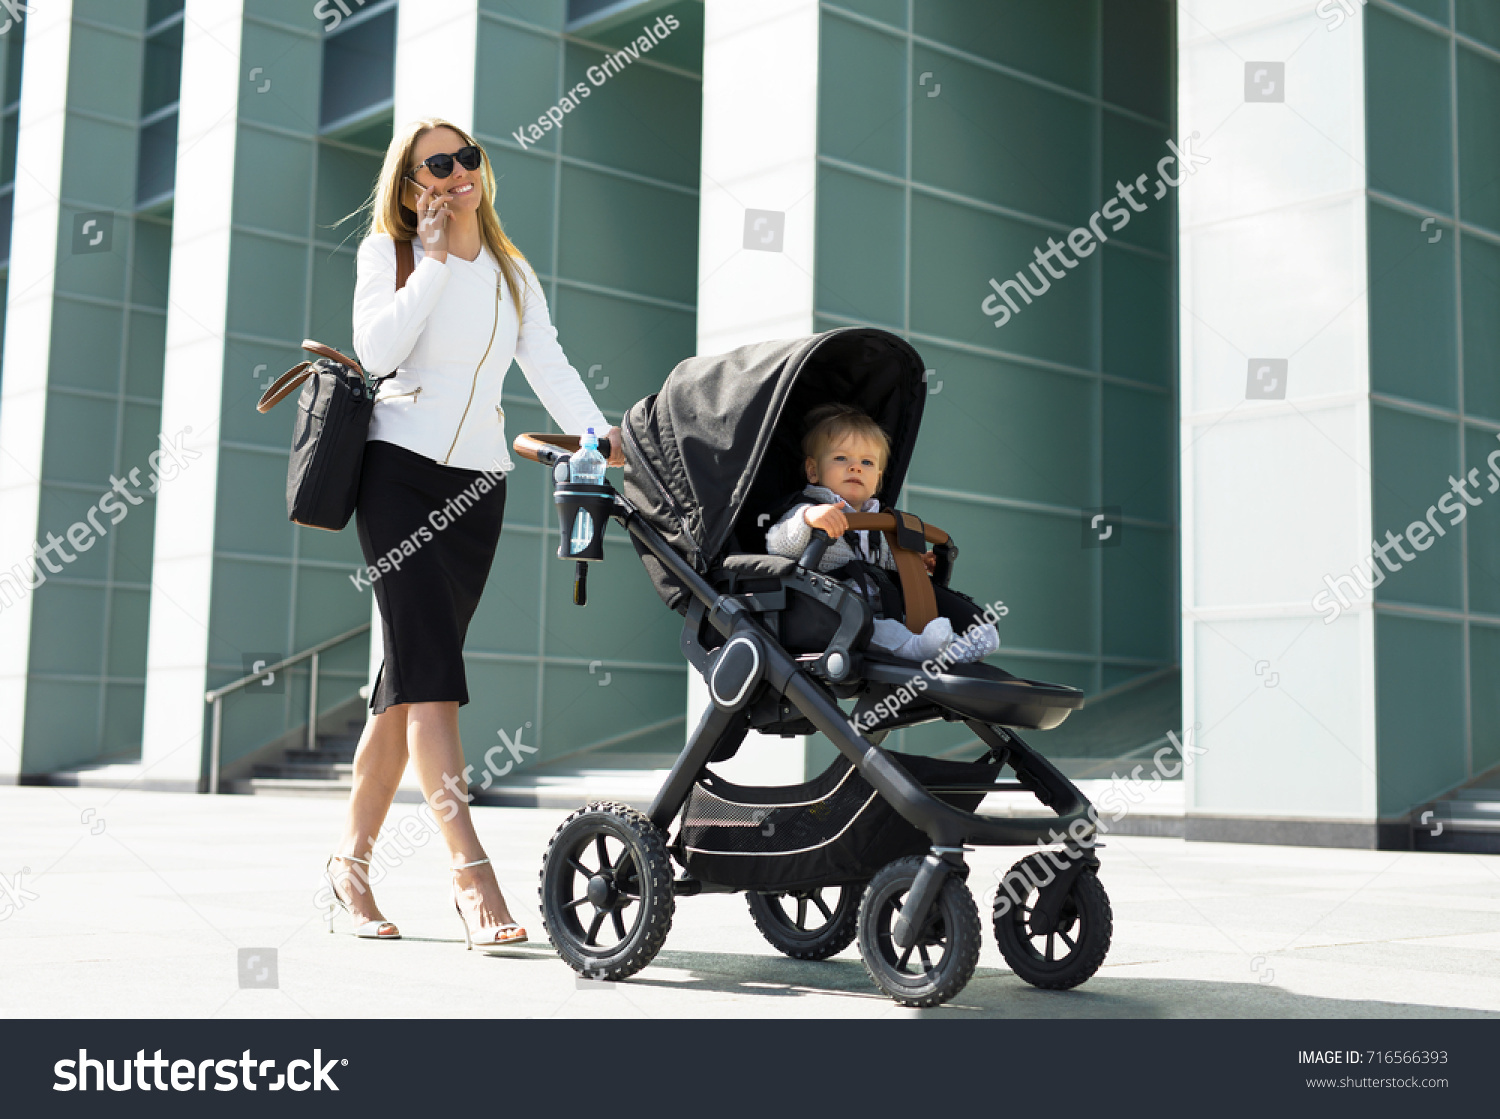 walking talking baby